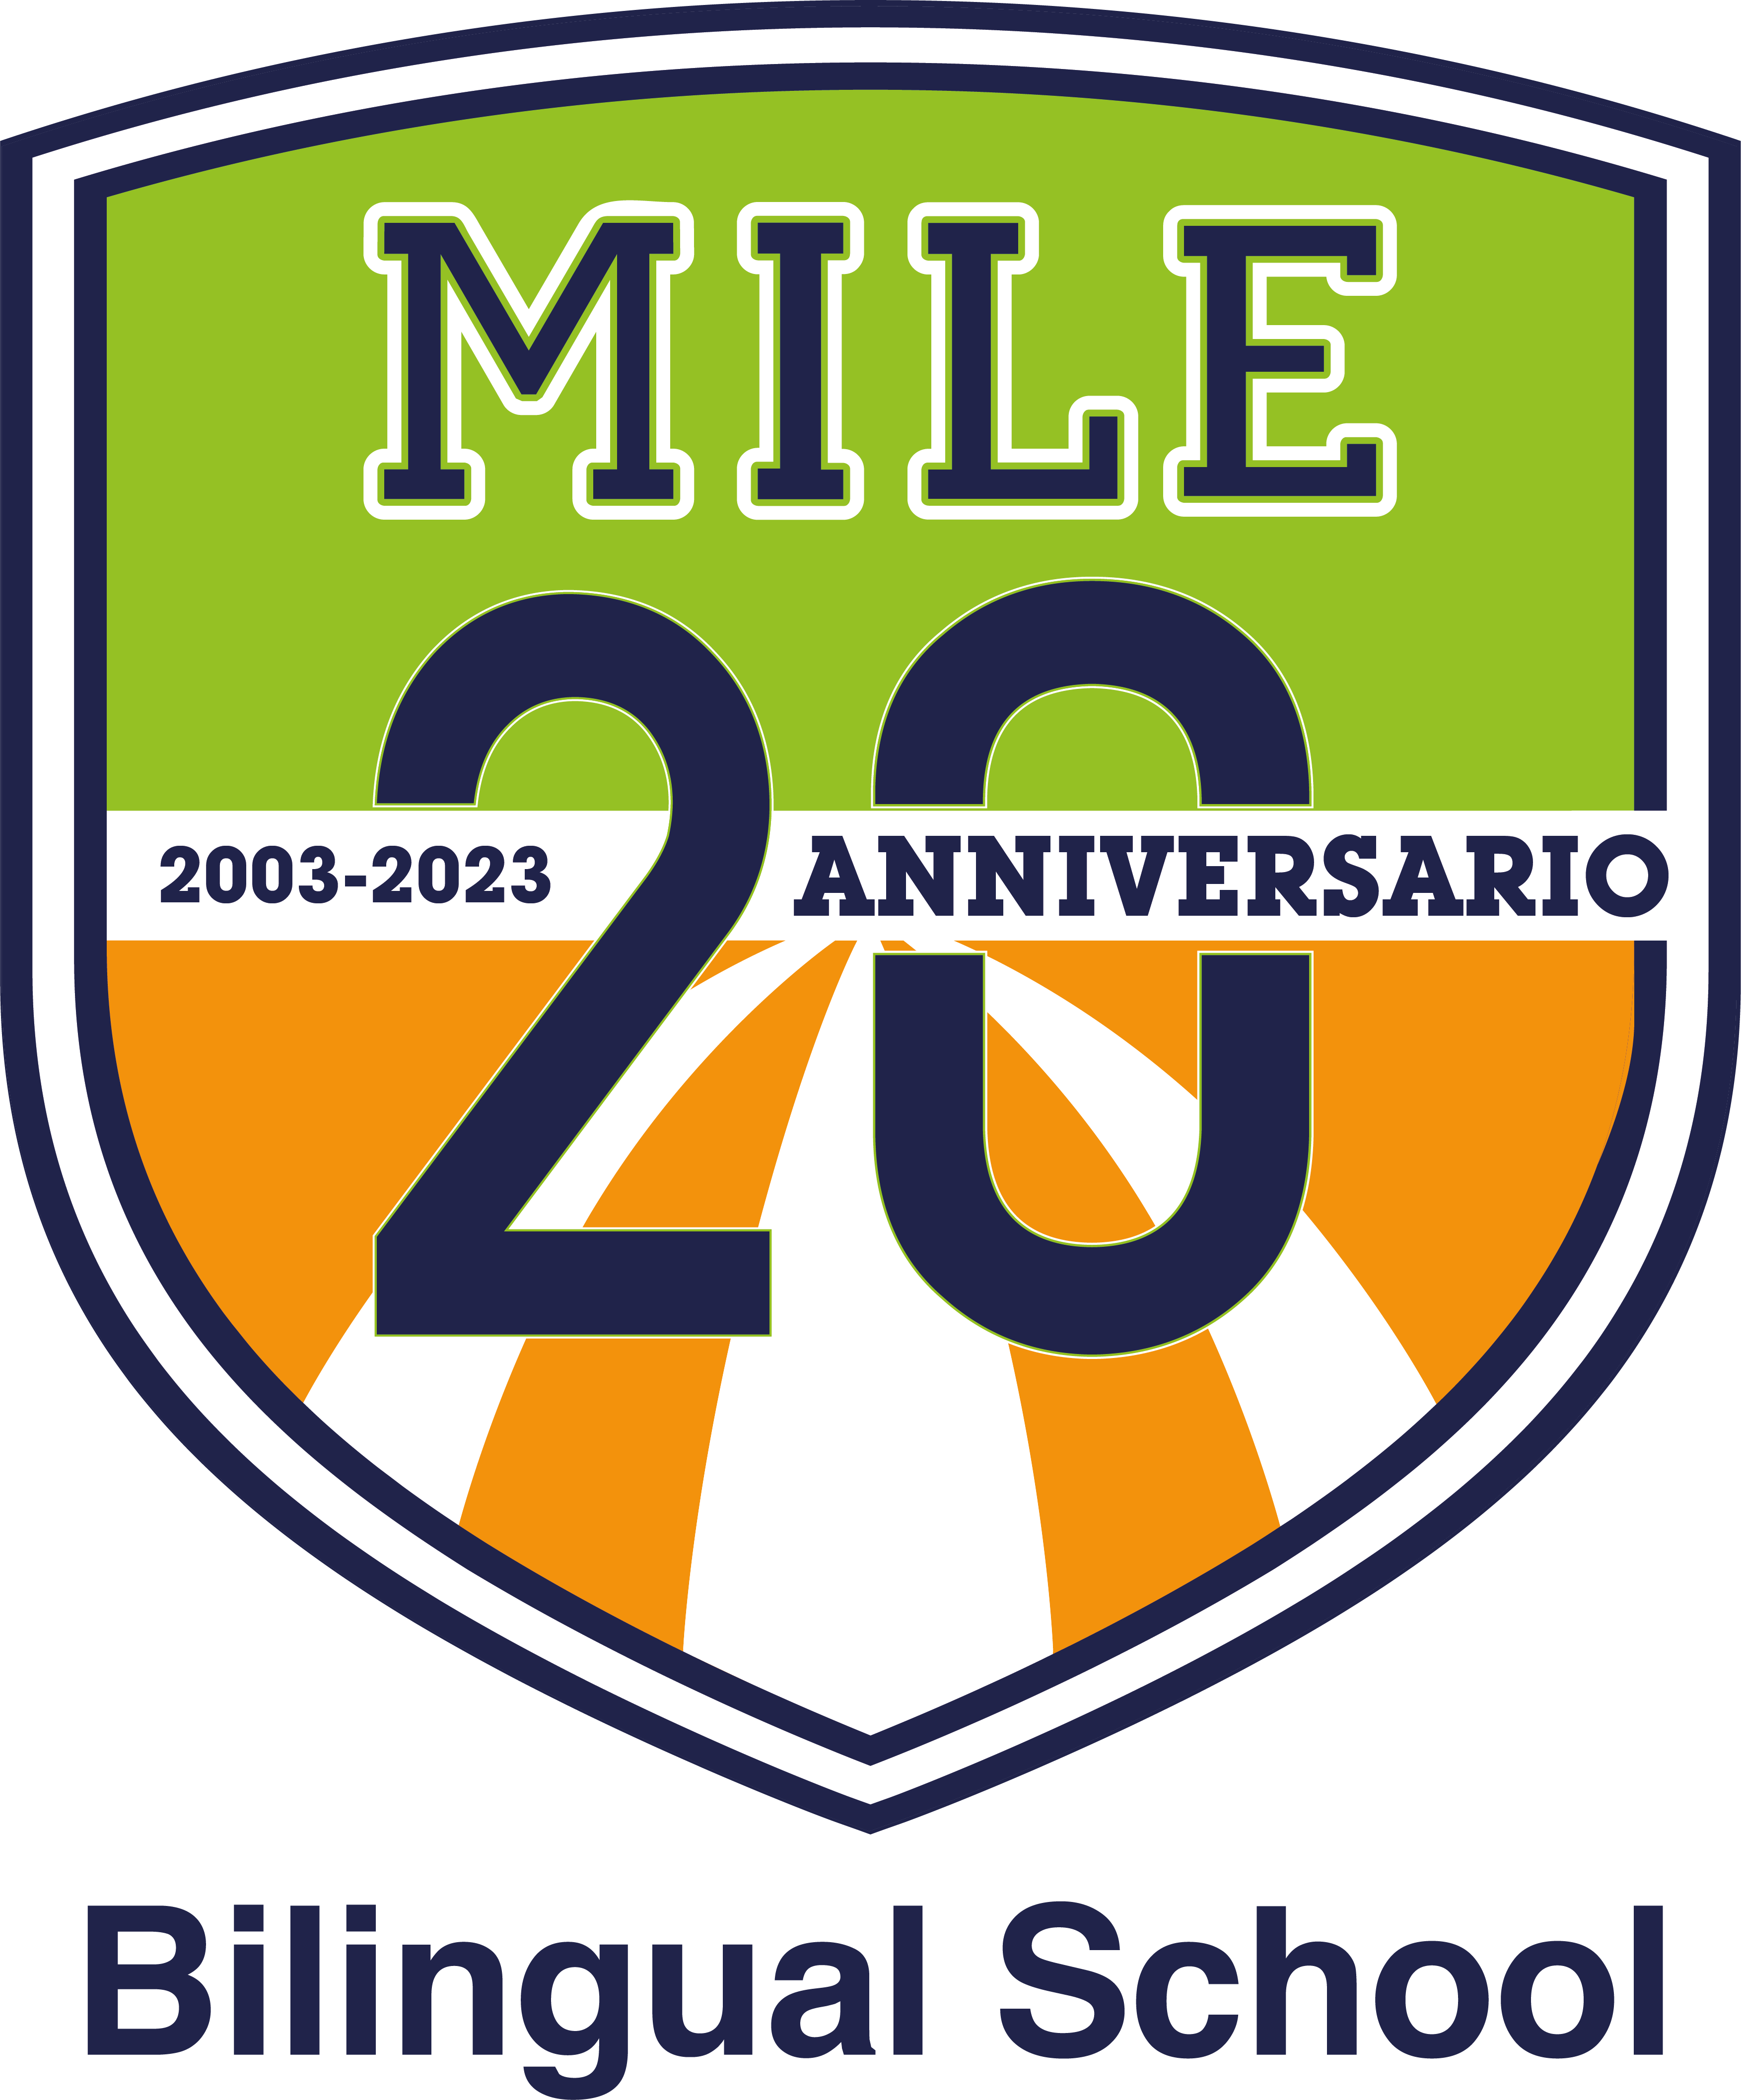 MILE_20 Anniversario_logo (3)